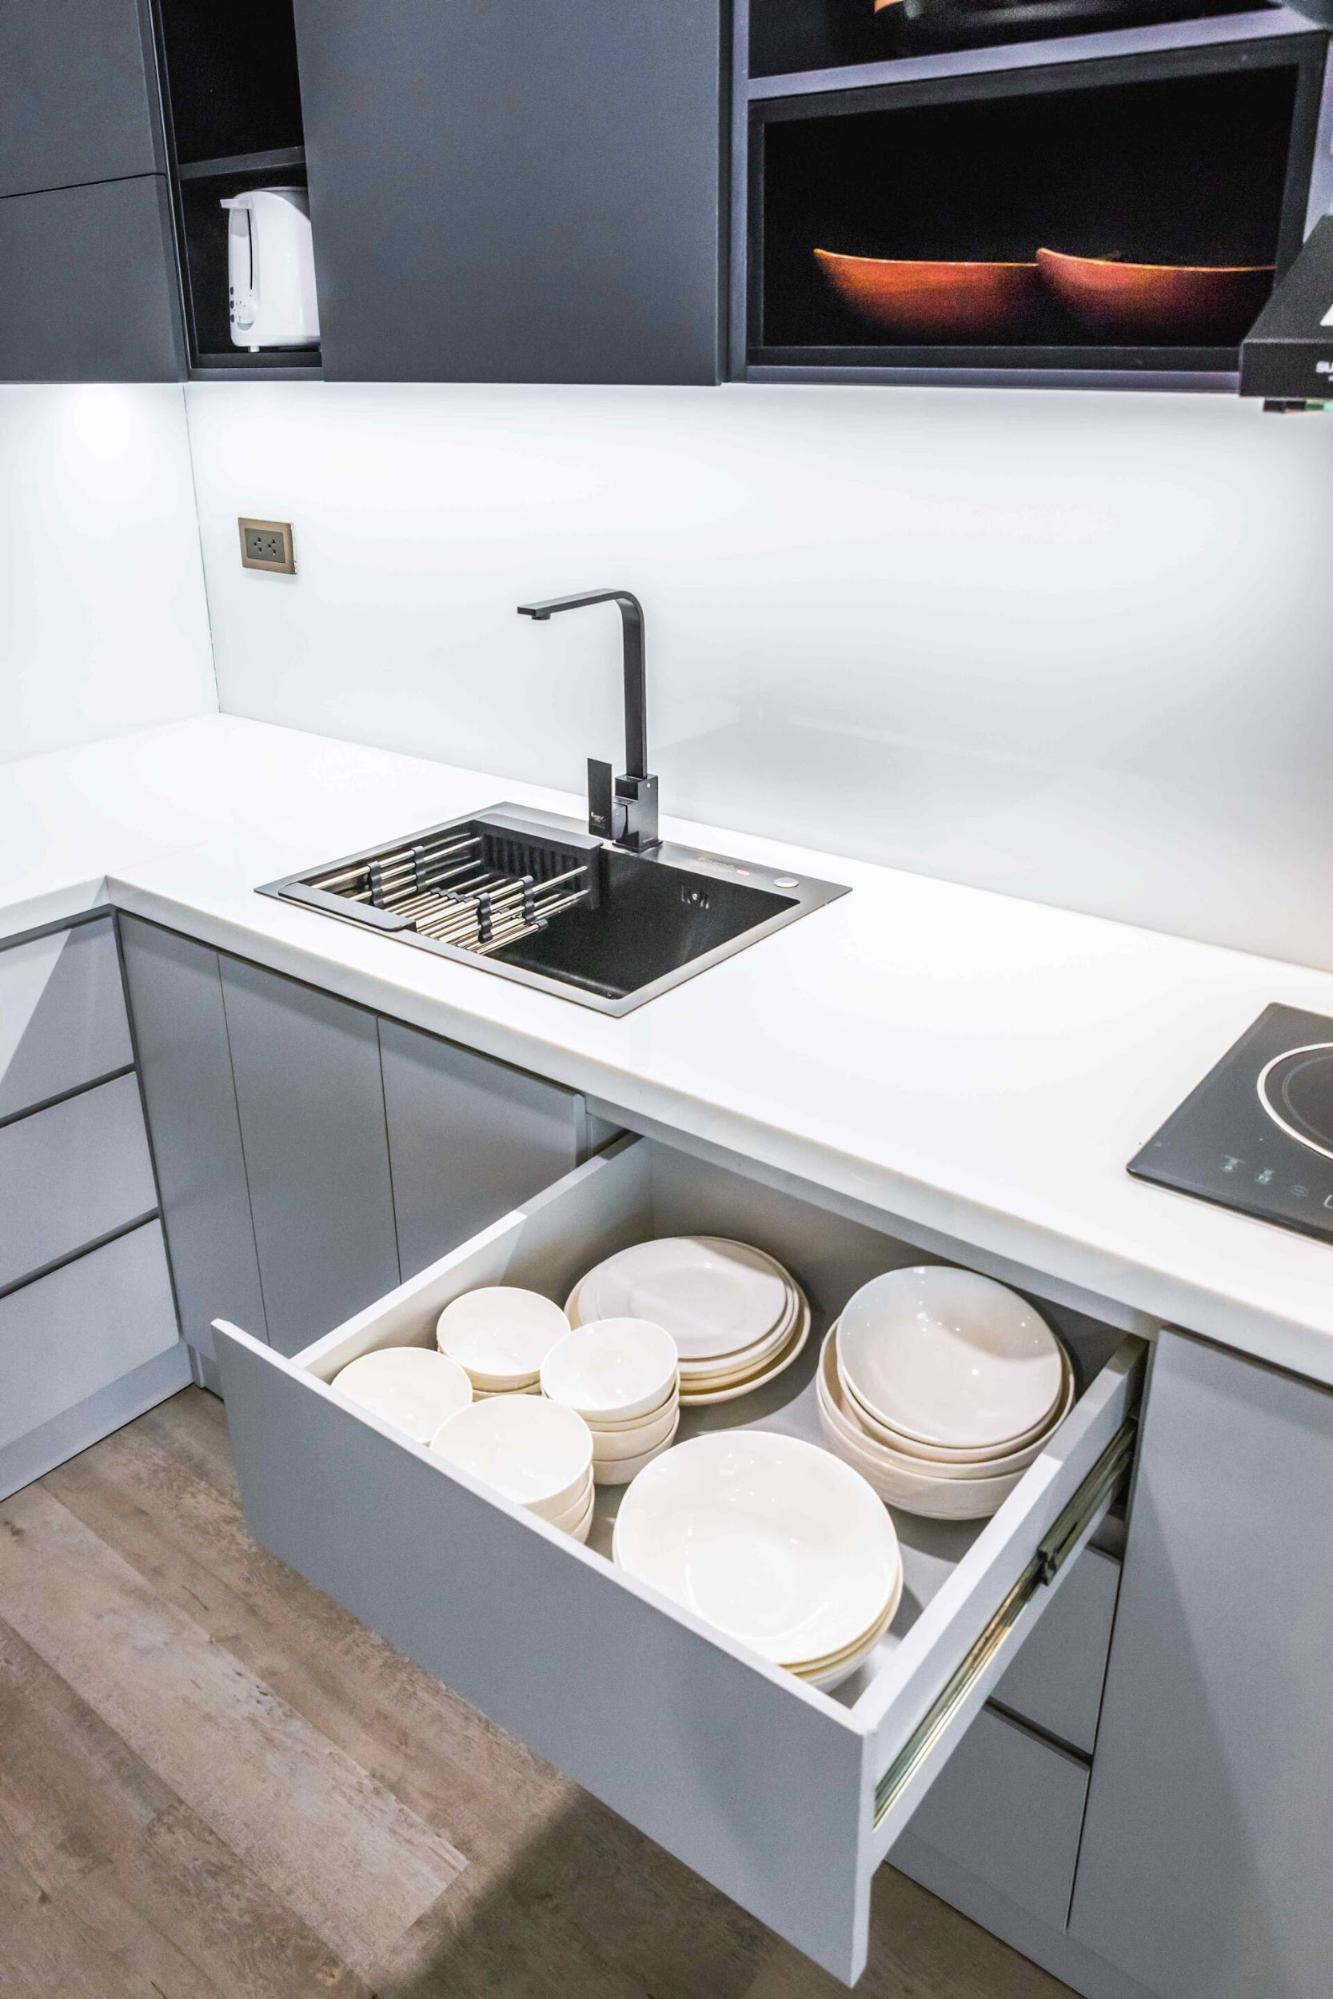 Khu vực bếp được thiết kế nhiều ngăn kệ giúp tiết kiệm bề mặt bếp và không gian